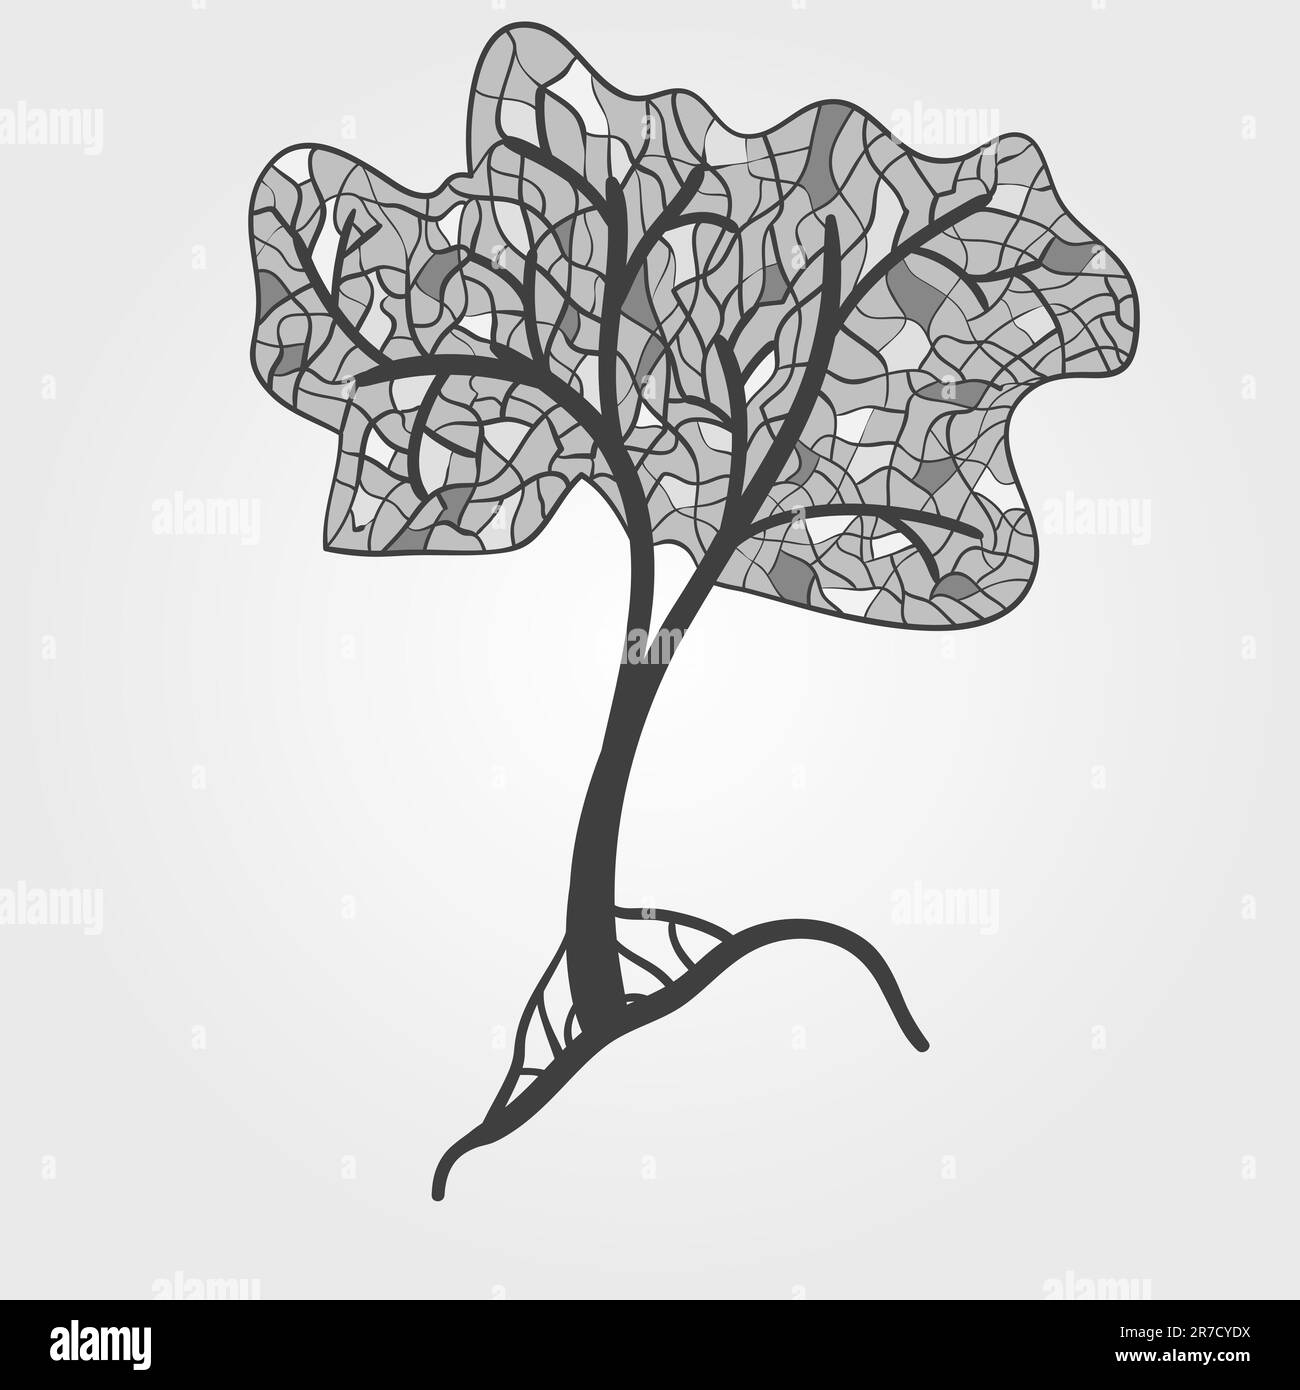 albero stilizzato in vetro colorato vettoriale, monocromatico Illustrazione Vettoriale